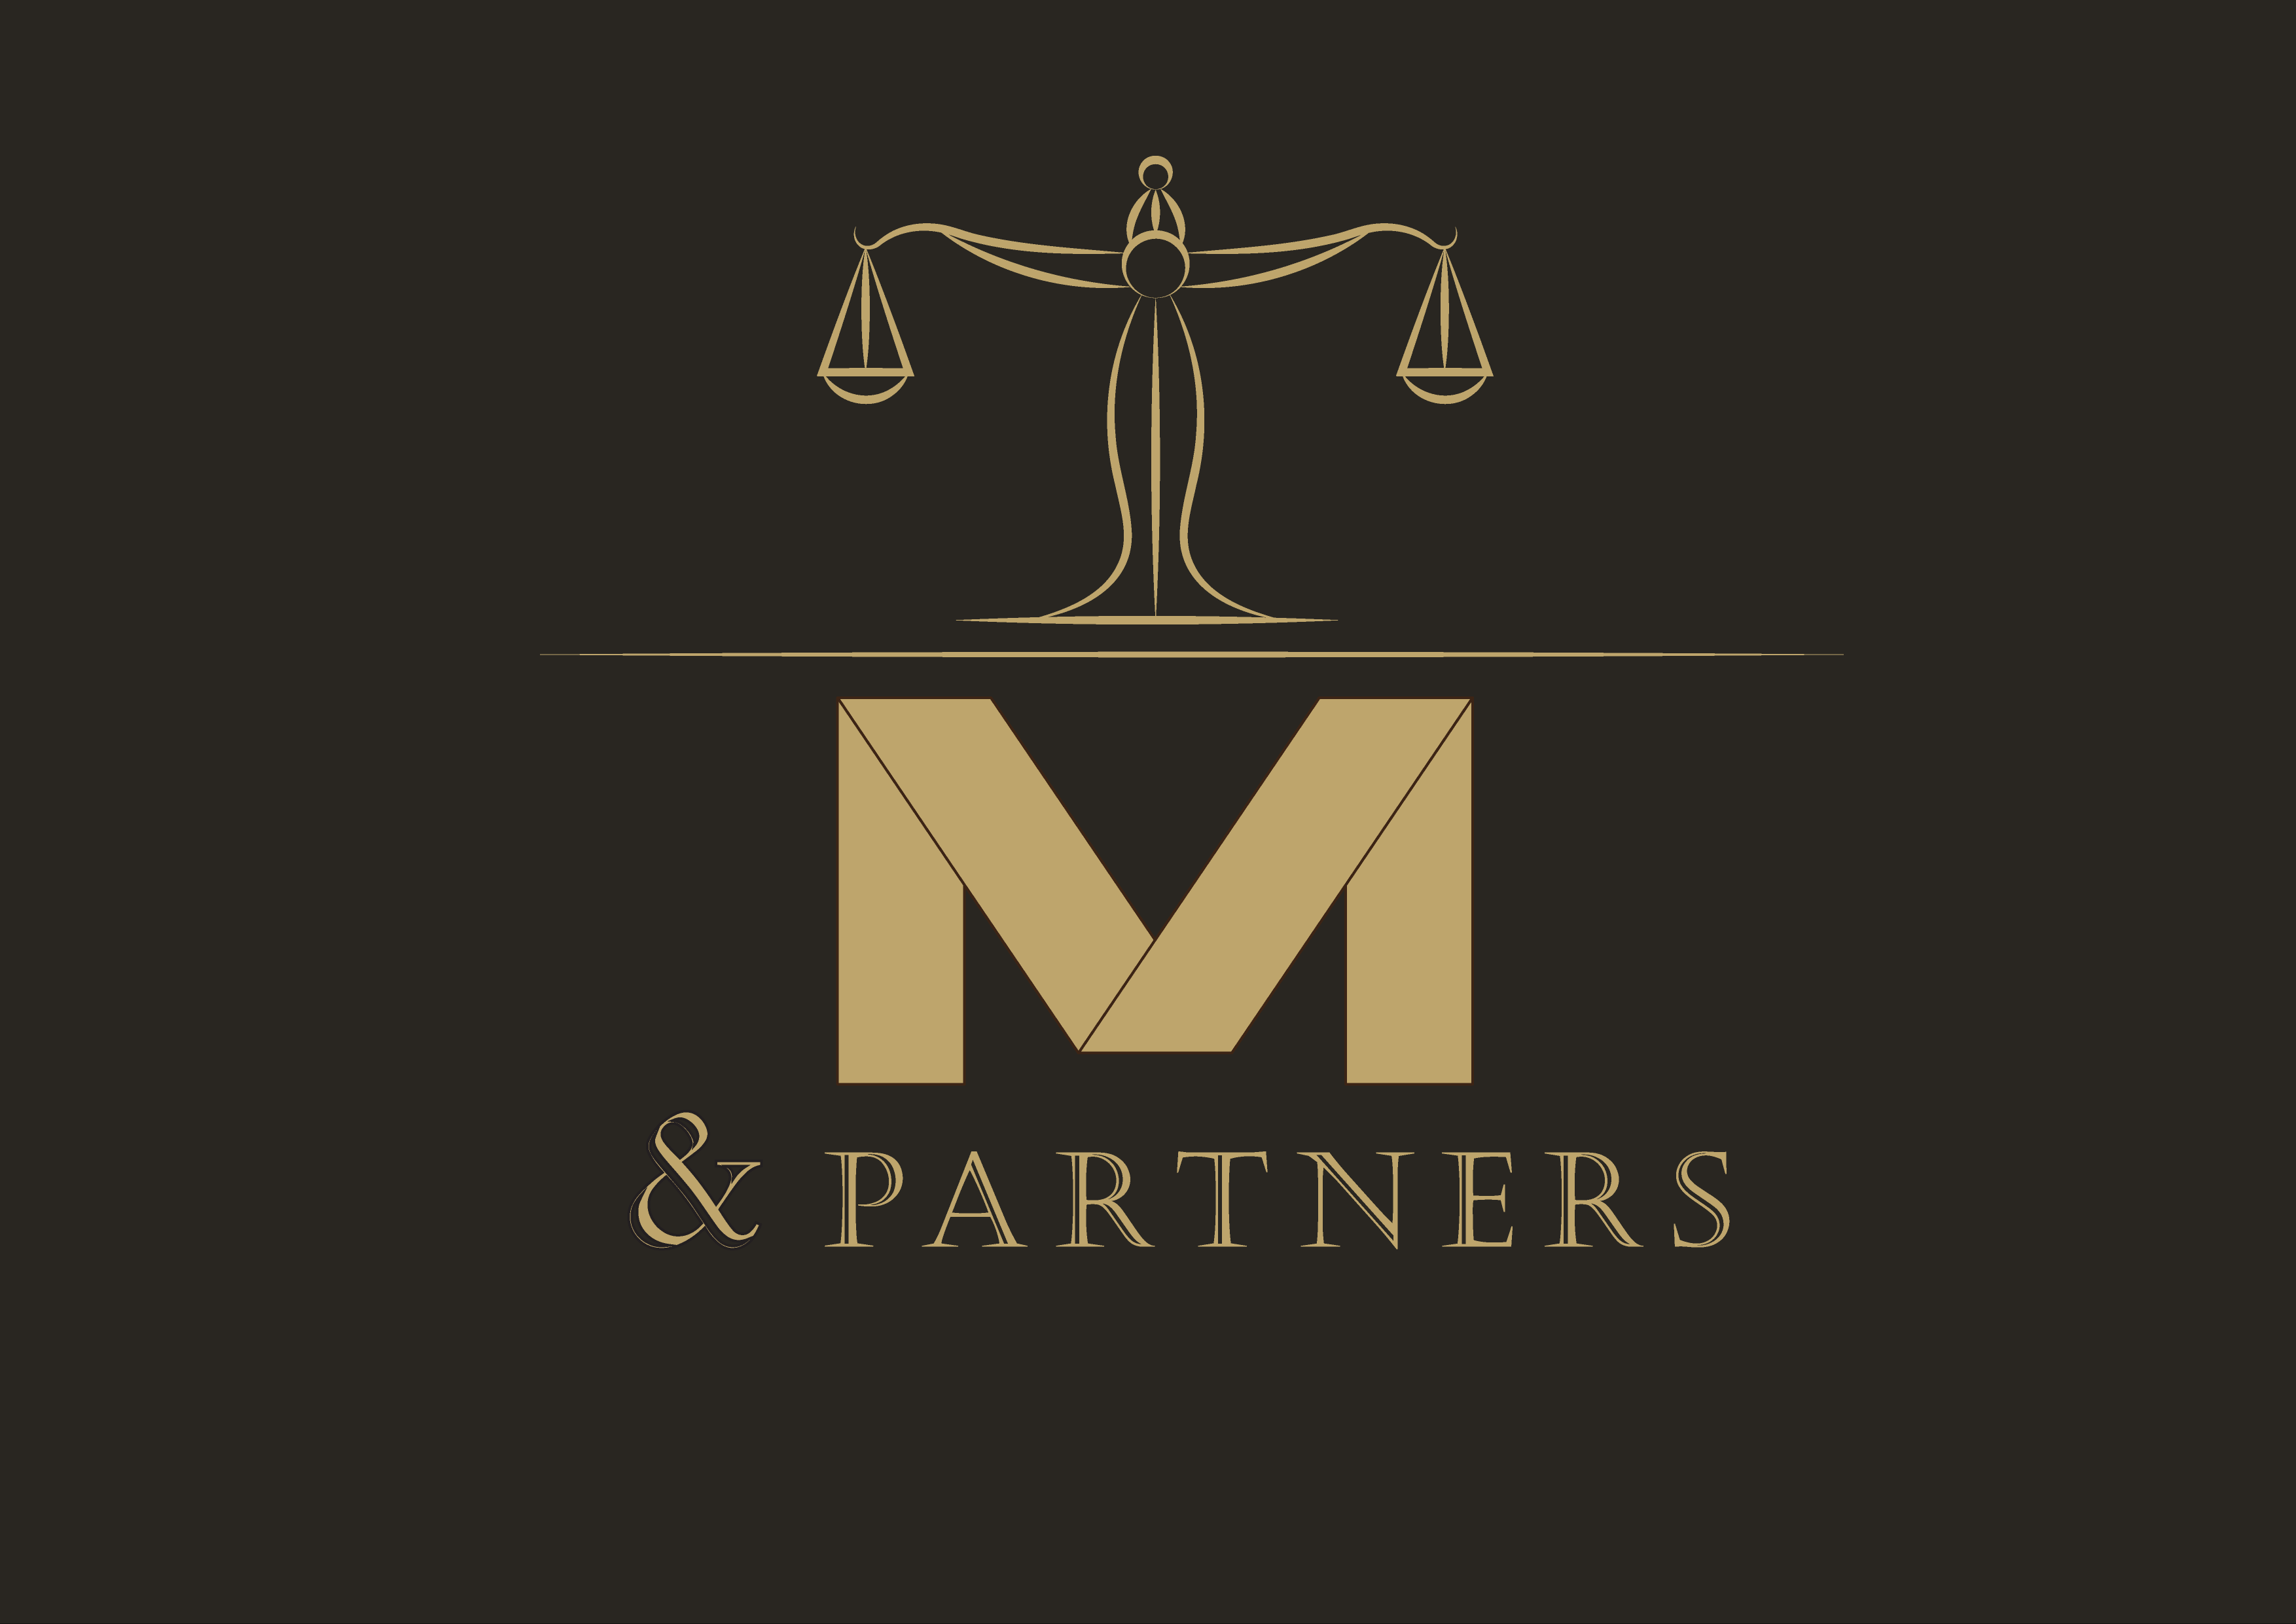 M & Companions Laws company designate.